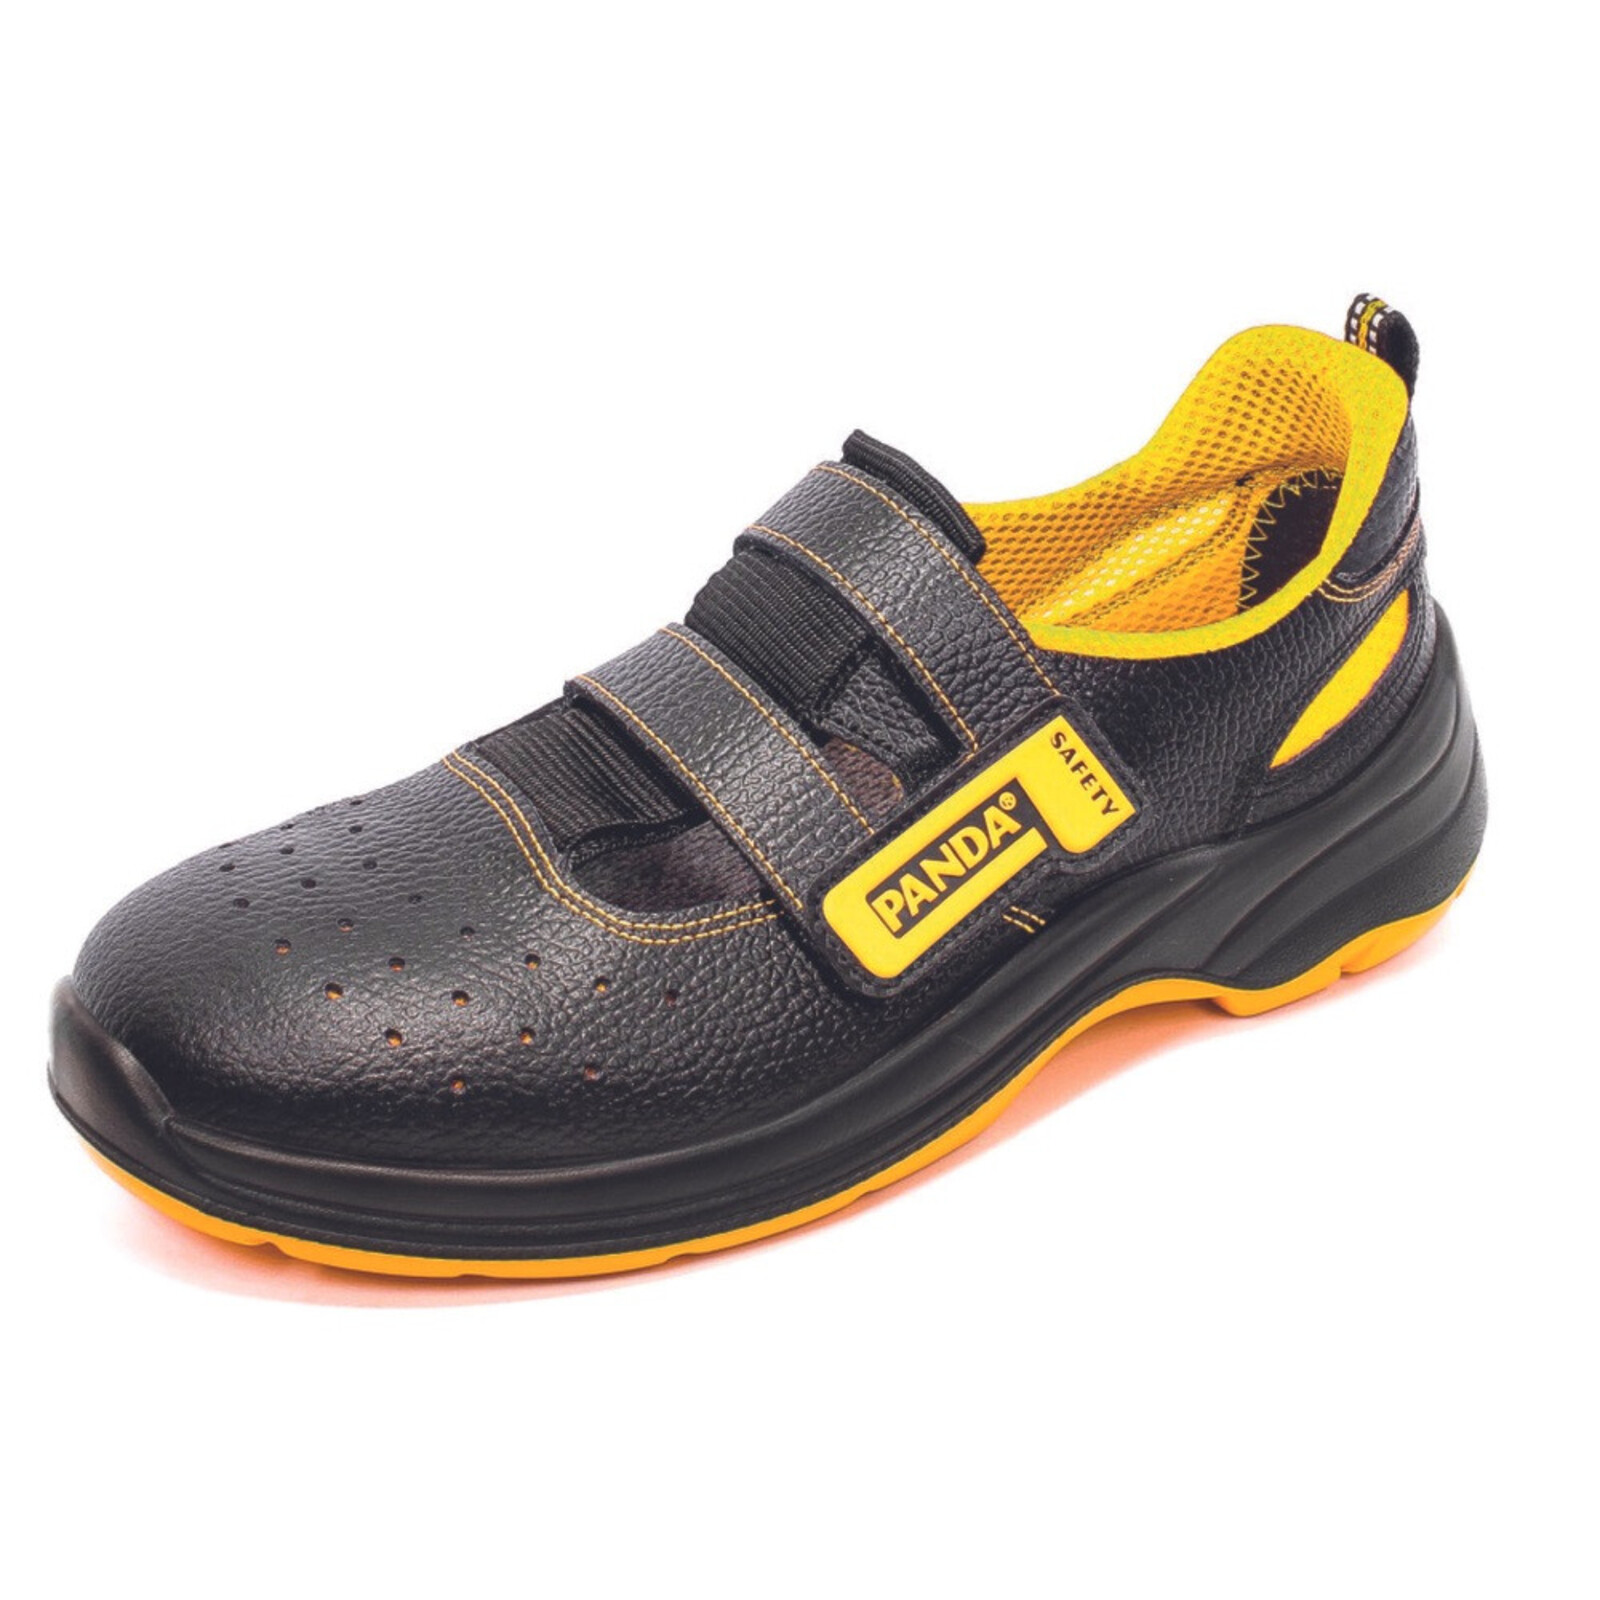 Bezpečnostné sandále Panda Basic Venezia MF S1P SRC - veľkosť: 45, farba: čierna/žltá